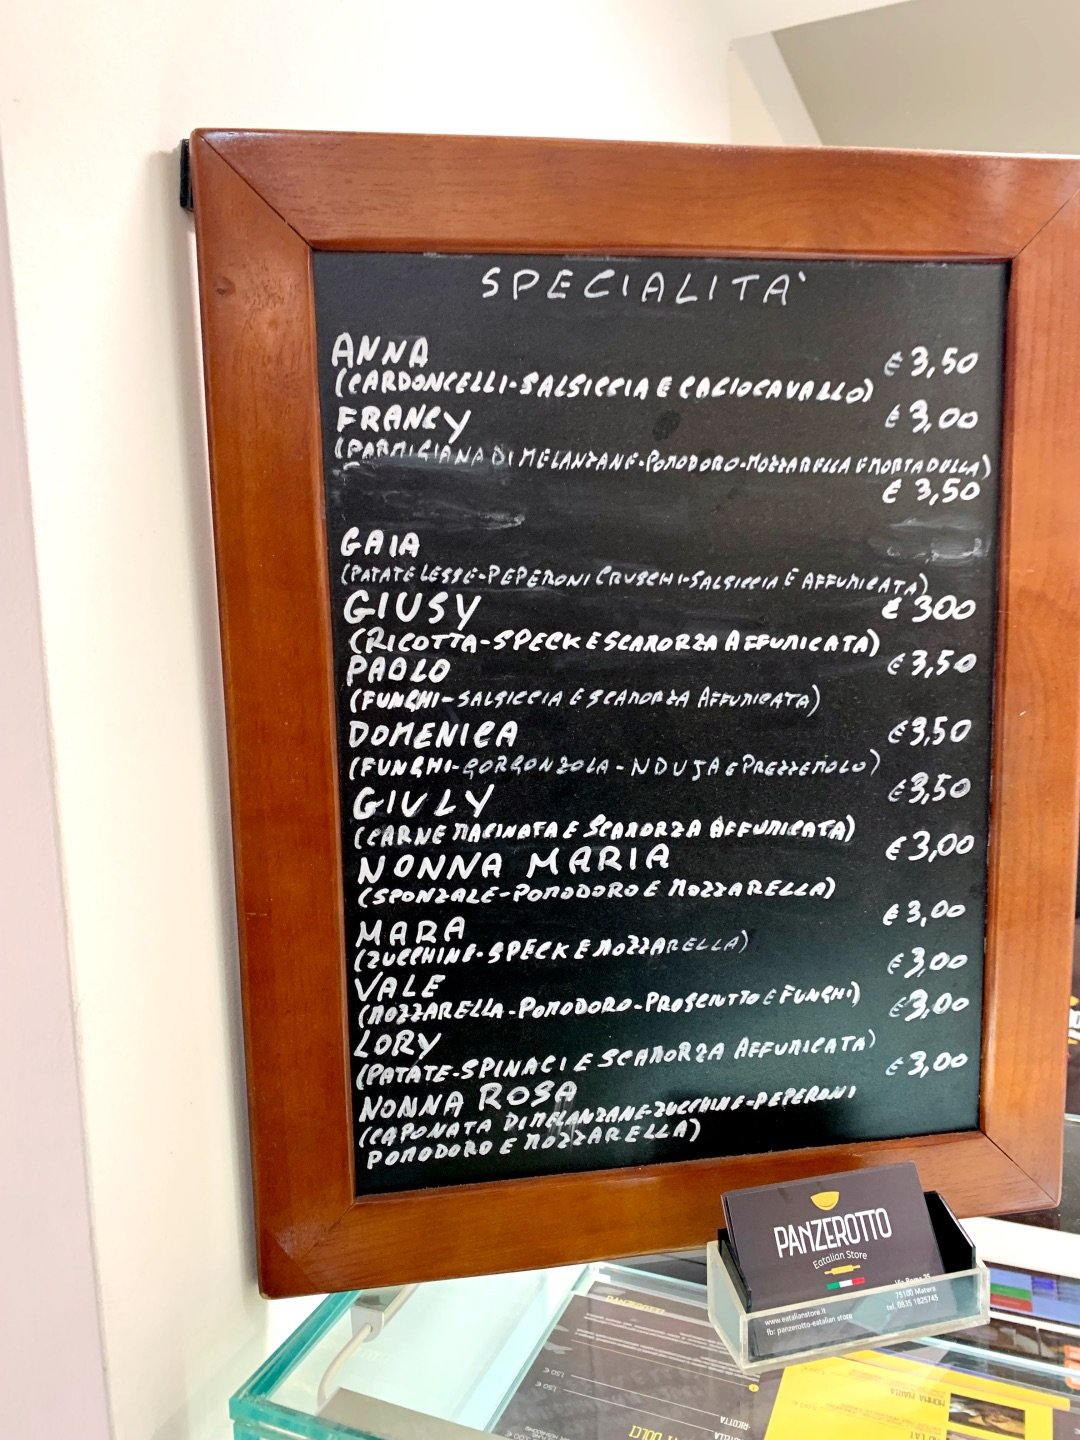 Menukaart van een restaurant met veel panzerotto: een typisch gerecht in Puglia en Basilicata. Gefrituurd deeg met inhoud.